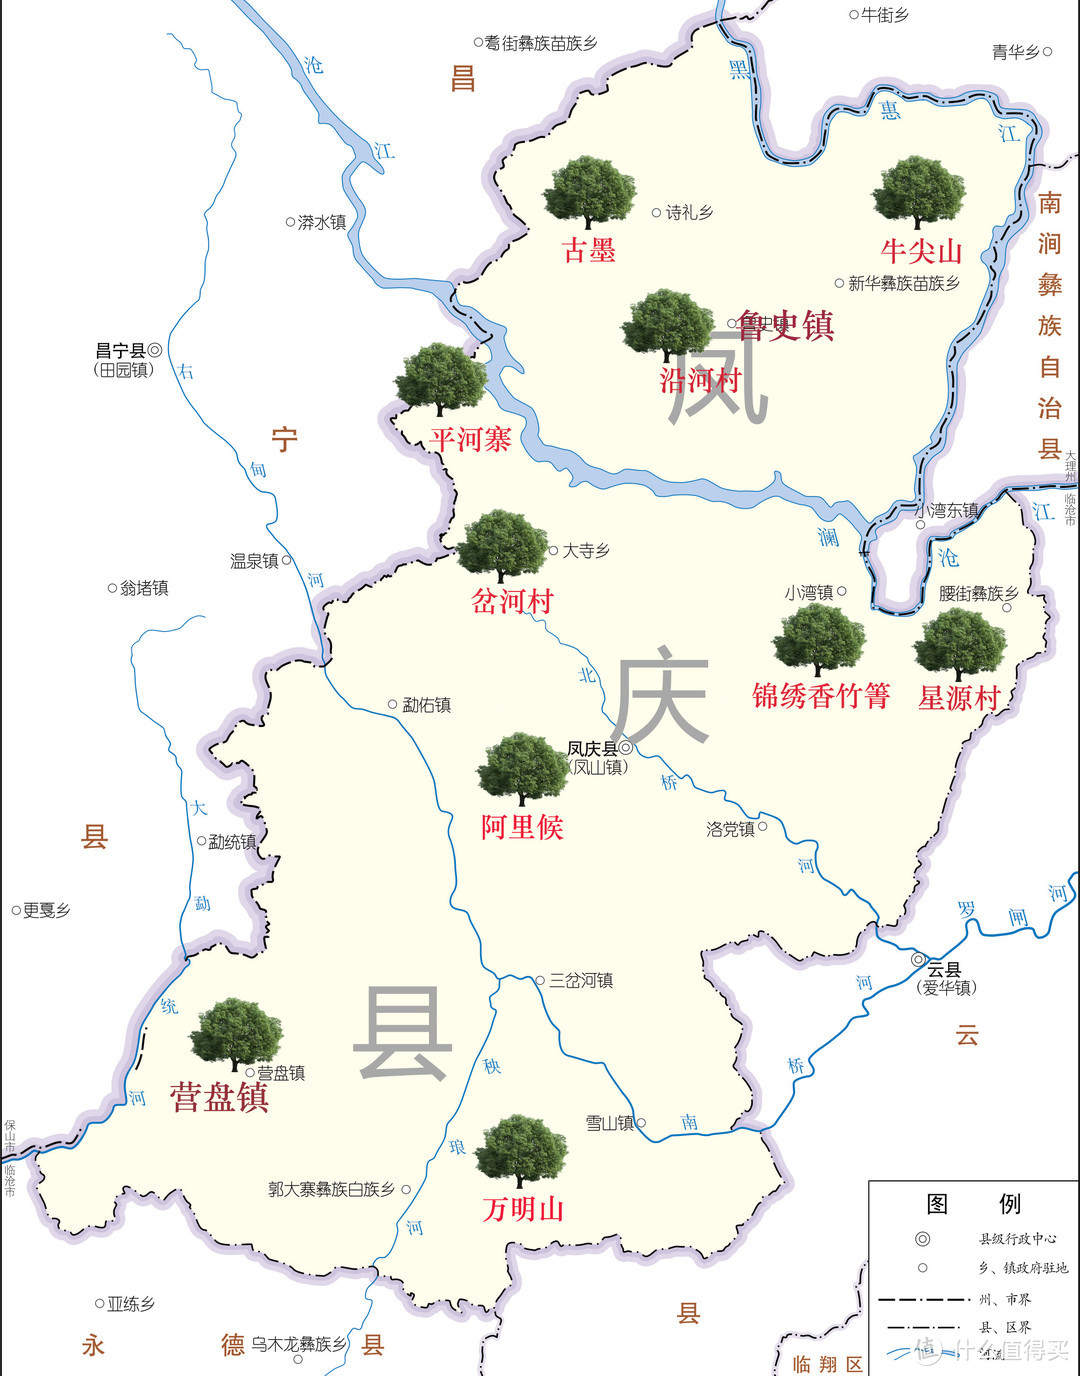 凤庆主要的古树茶园资源分布示意图（手工标注，仅供参考）